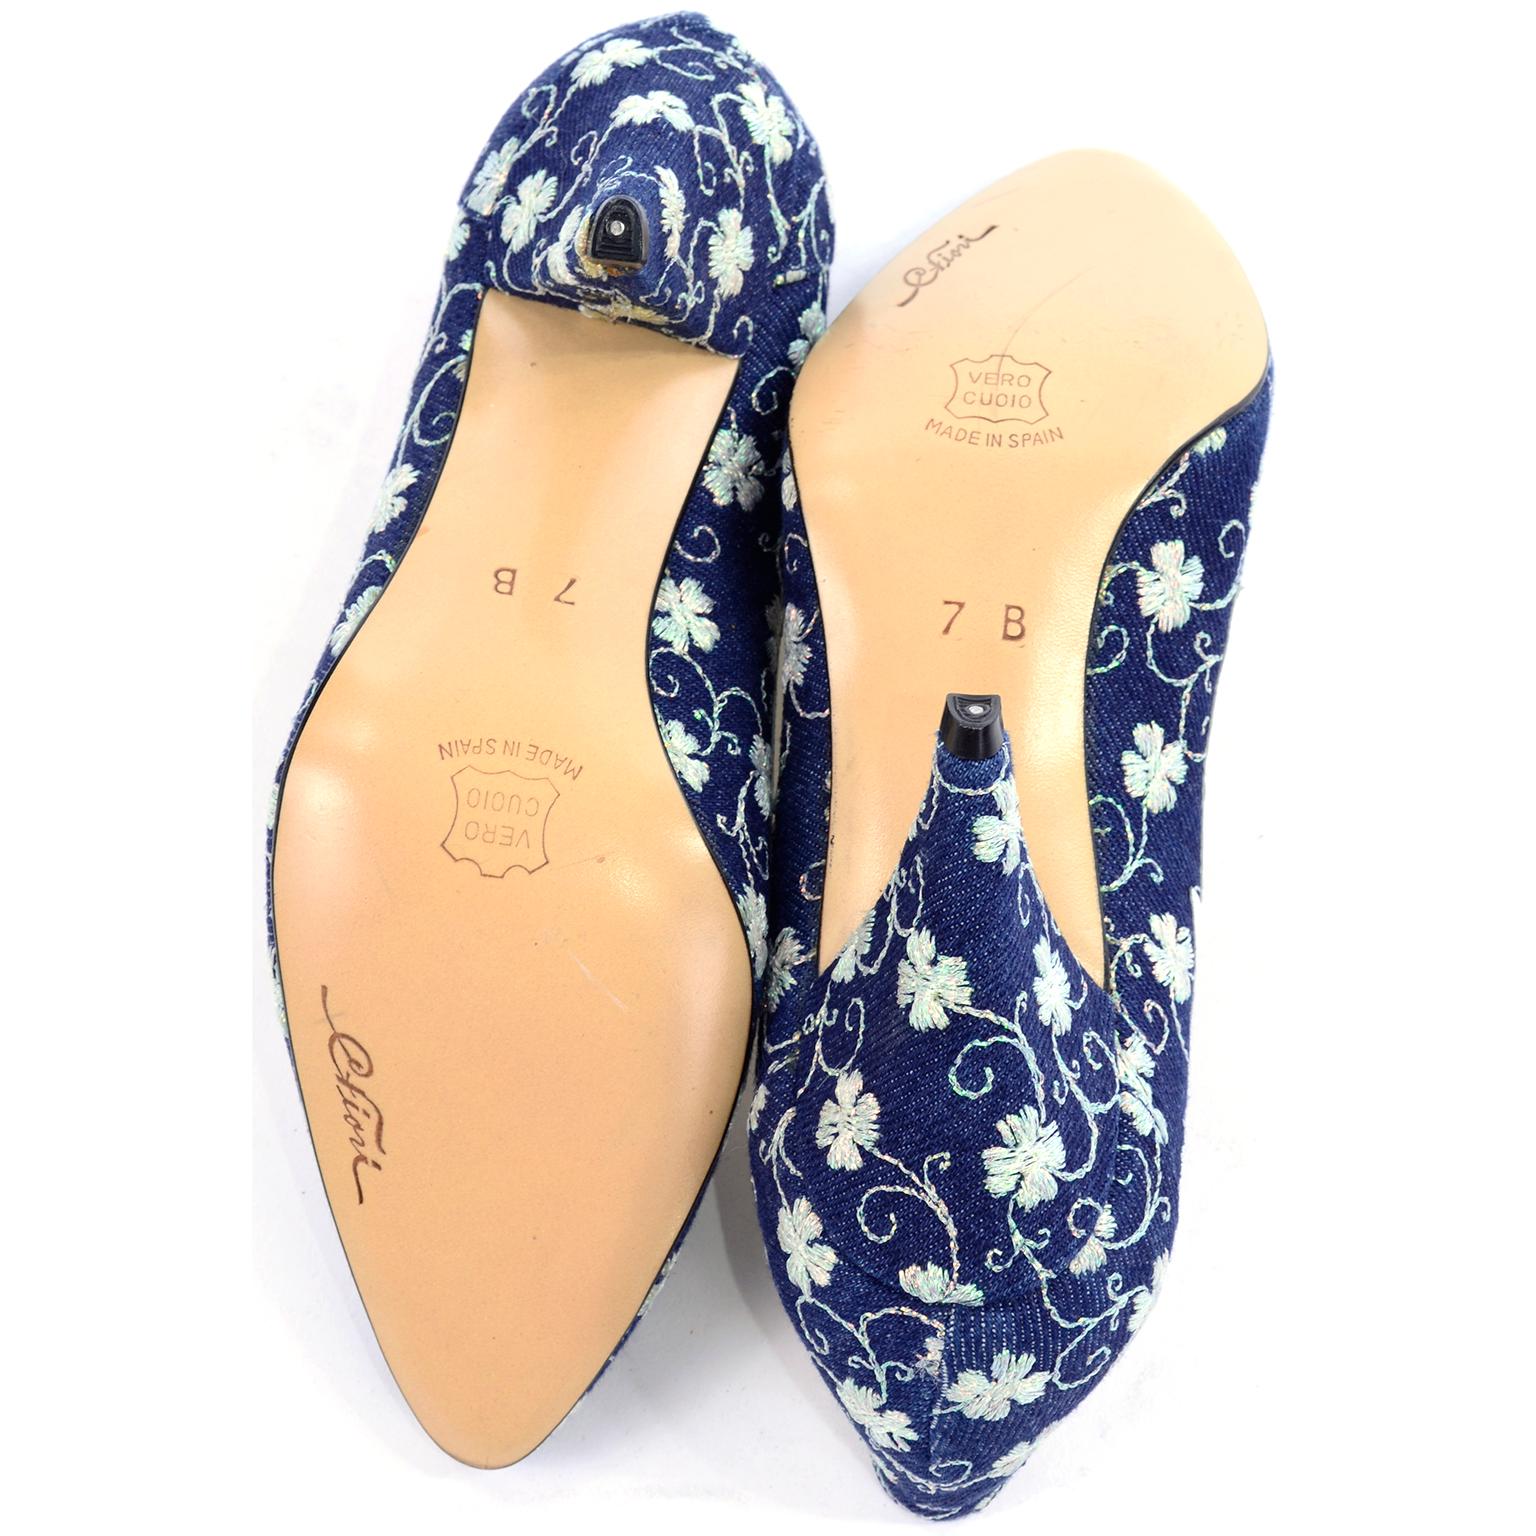 Carlo Fiori - Chaussures brodées bleu marine et blanc, en stock, non portées, taille 7B 4